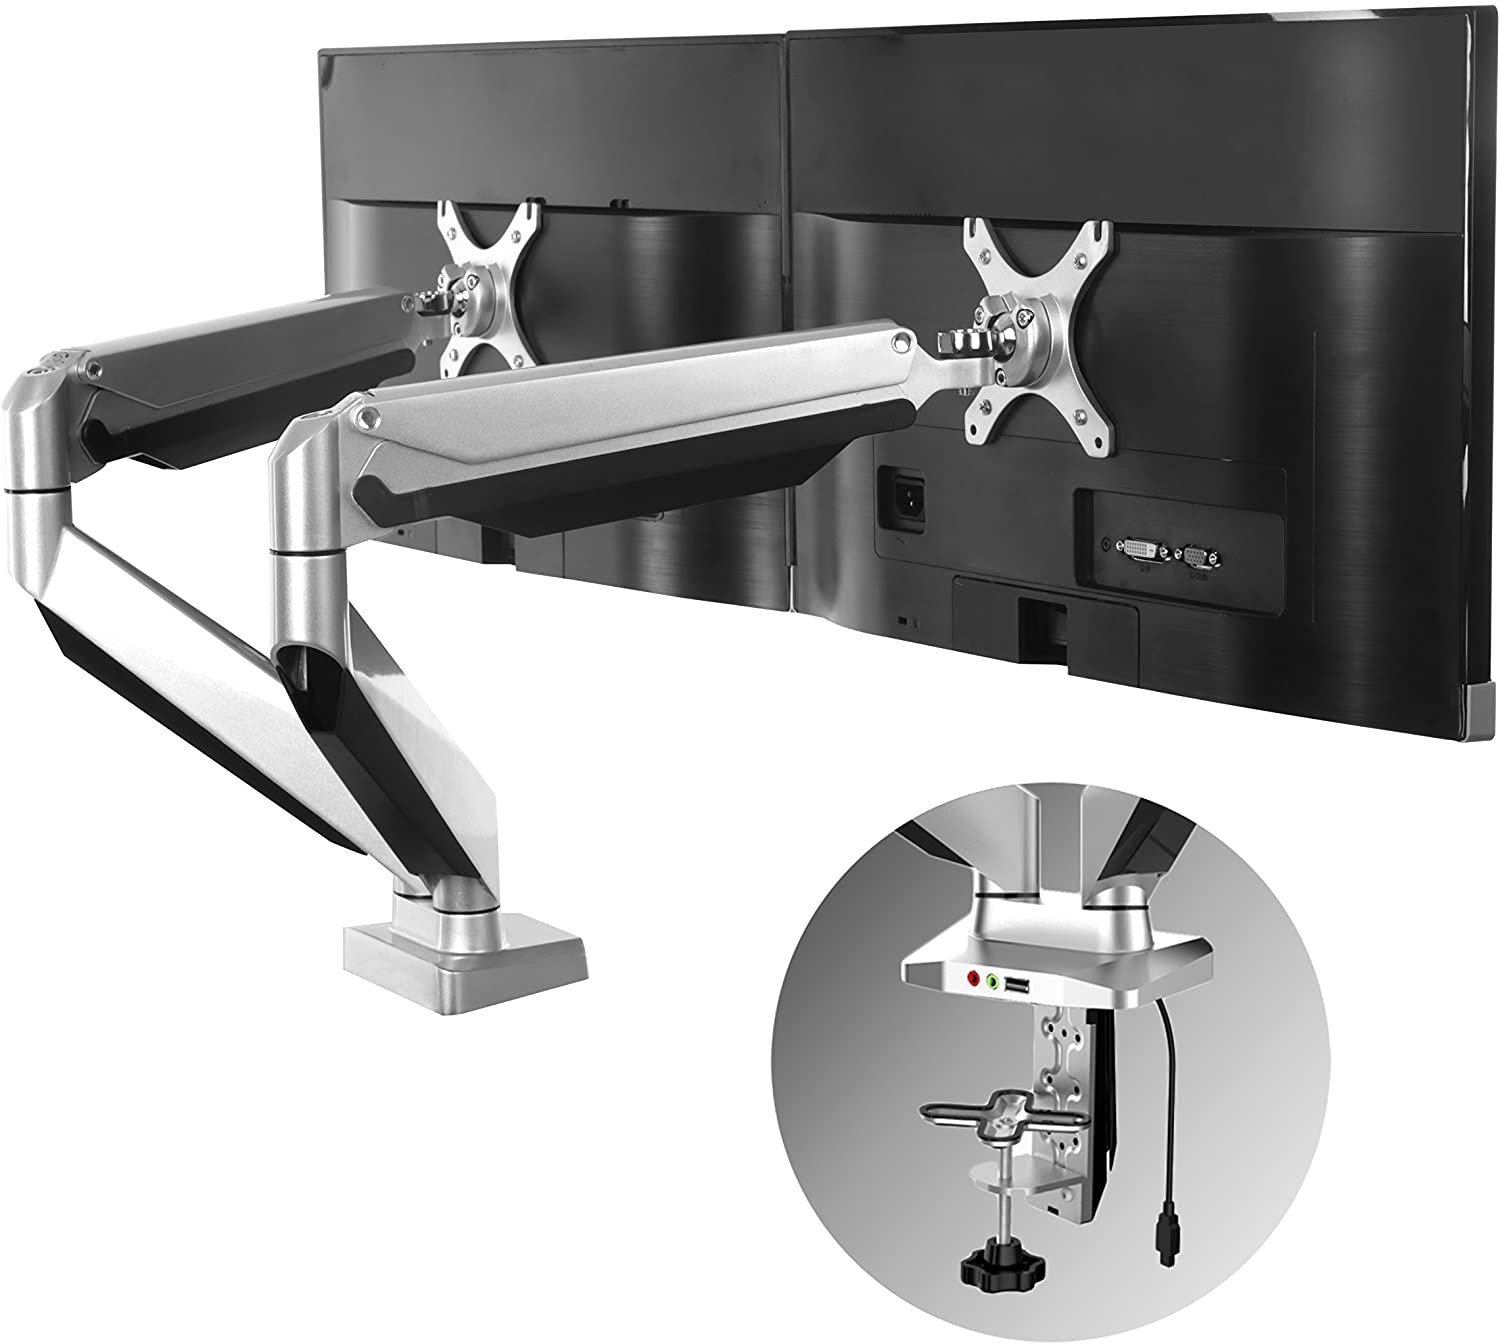 leef ermee aluminium Zich verzetten tegen Dual Monitor Arm for Standing Desks | Max Weight 20 Pounds Per Arm -  MojoDesk